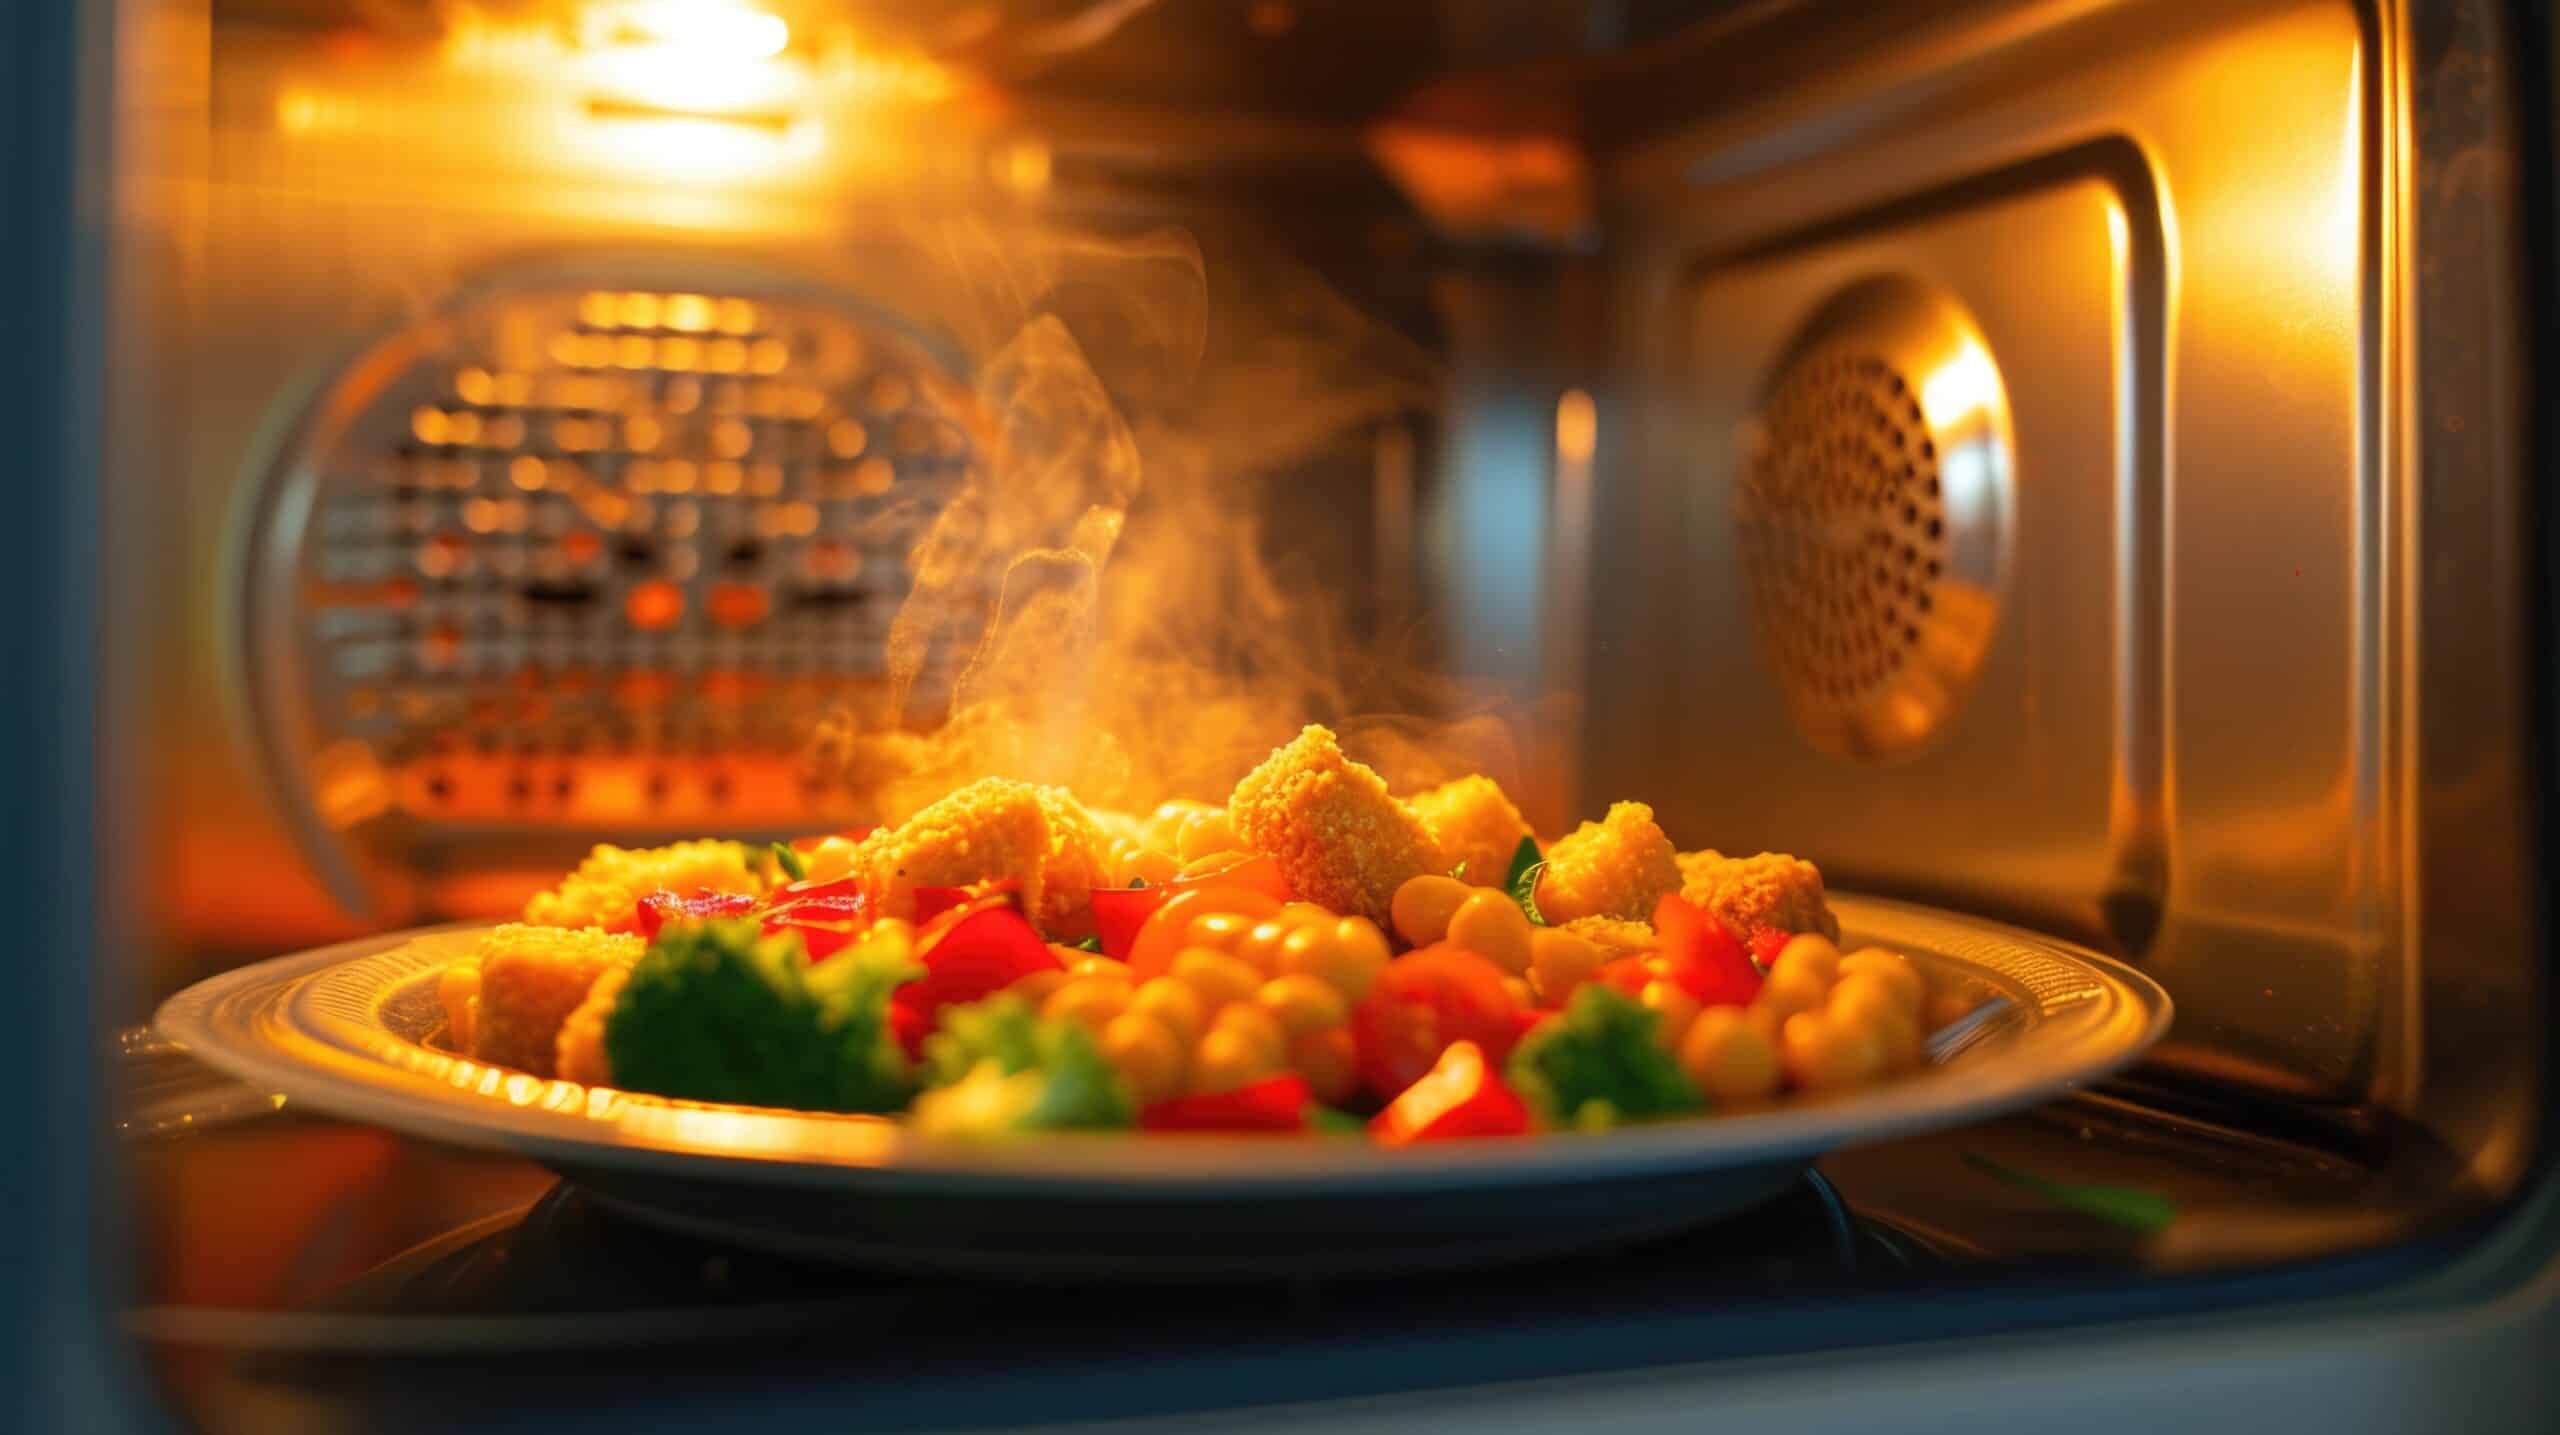 Steaming Hot Meal Freshly Microwaved